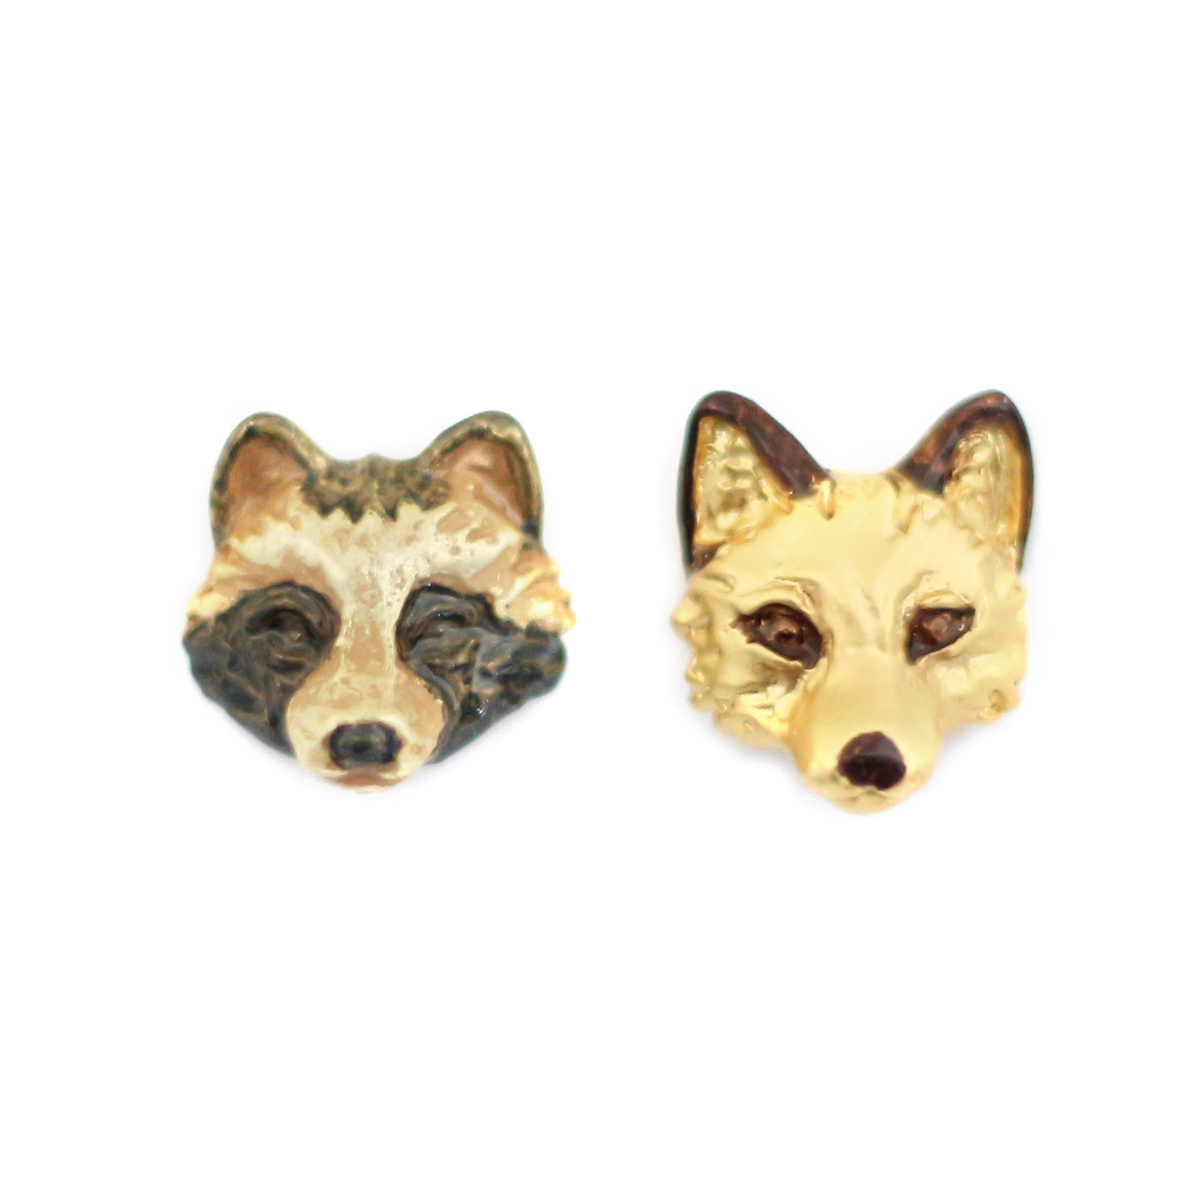 たぬきつピアス / Racoon Dog and Fox